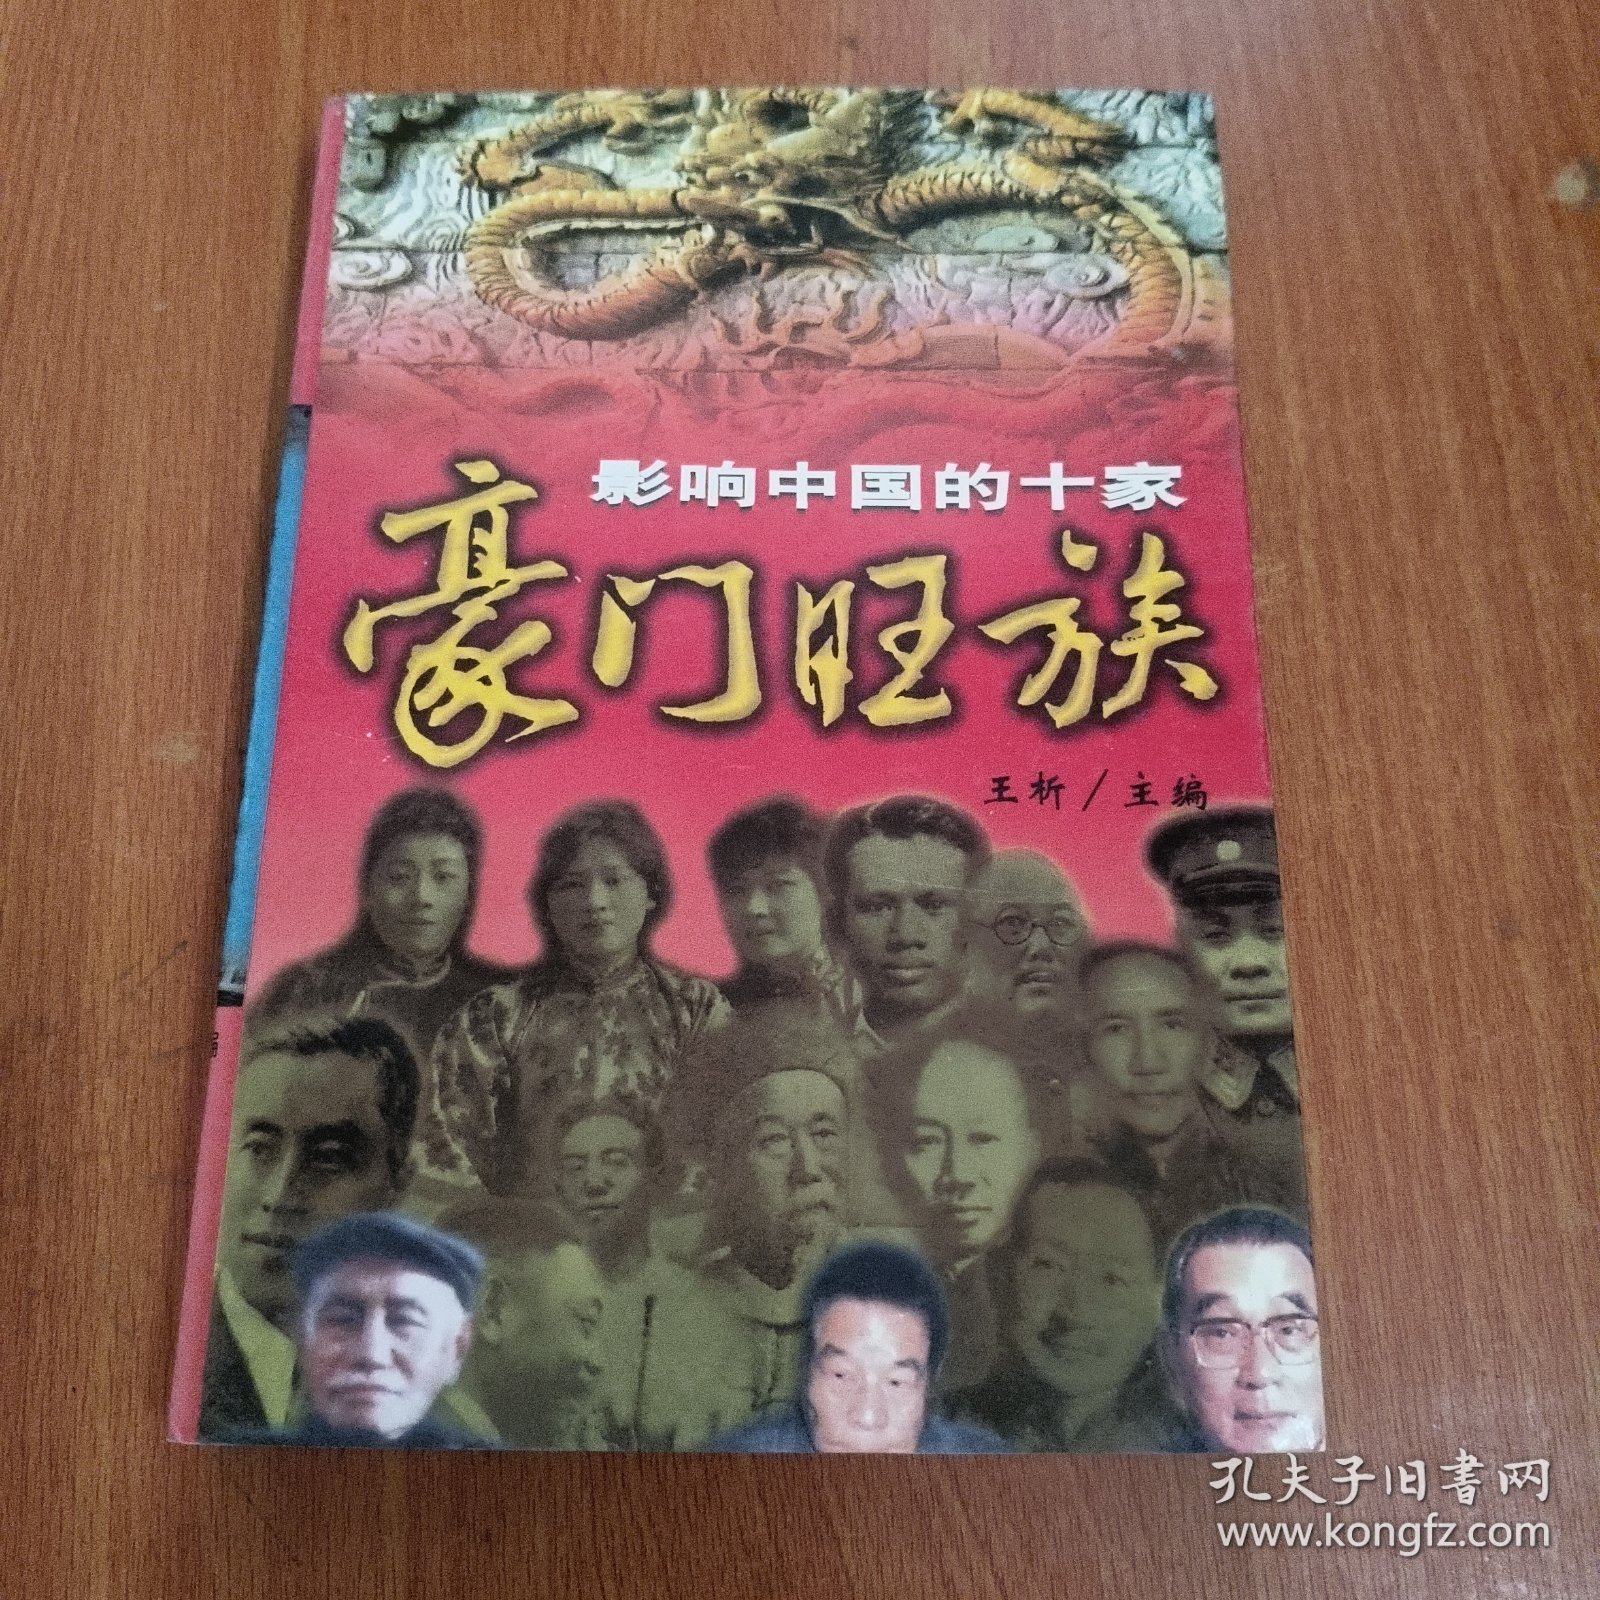 影响中国的十家豪门旺族:插图本